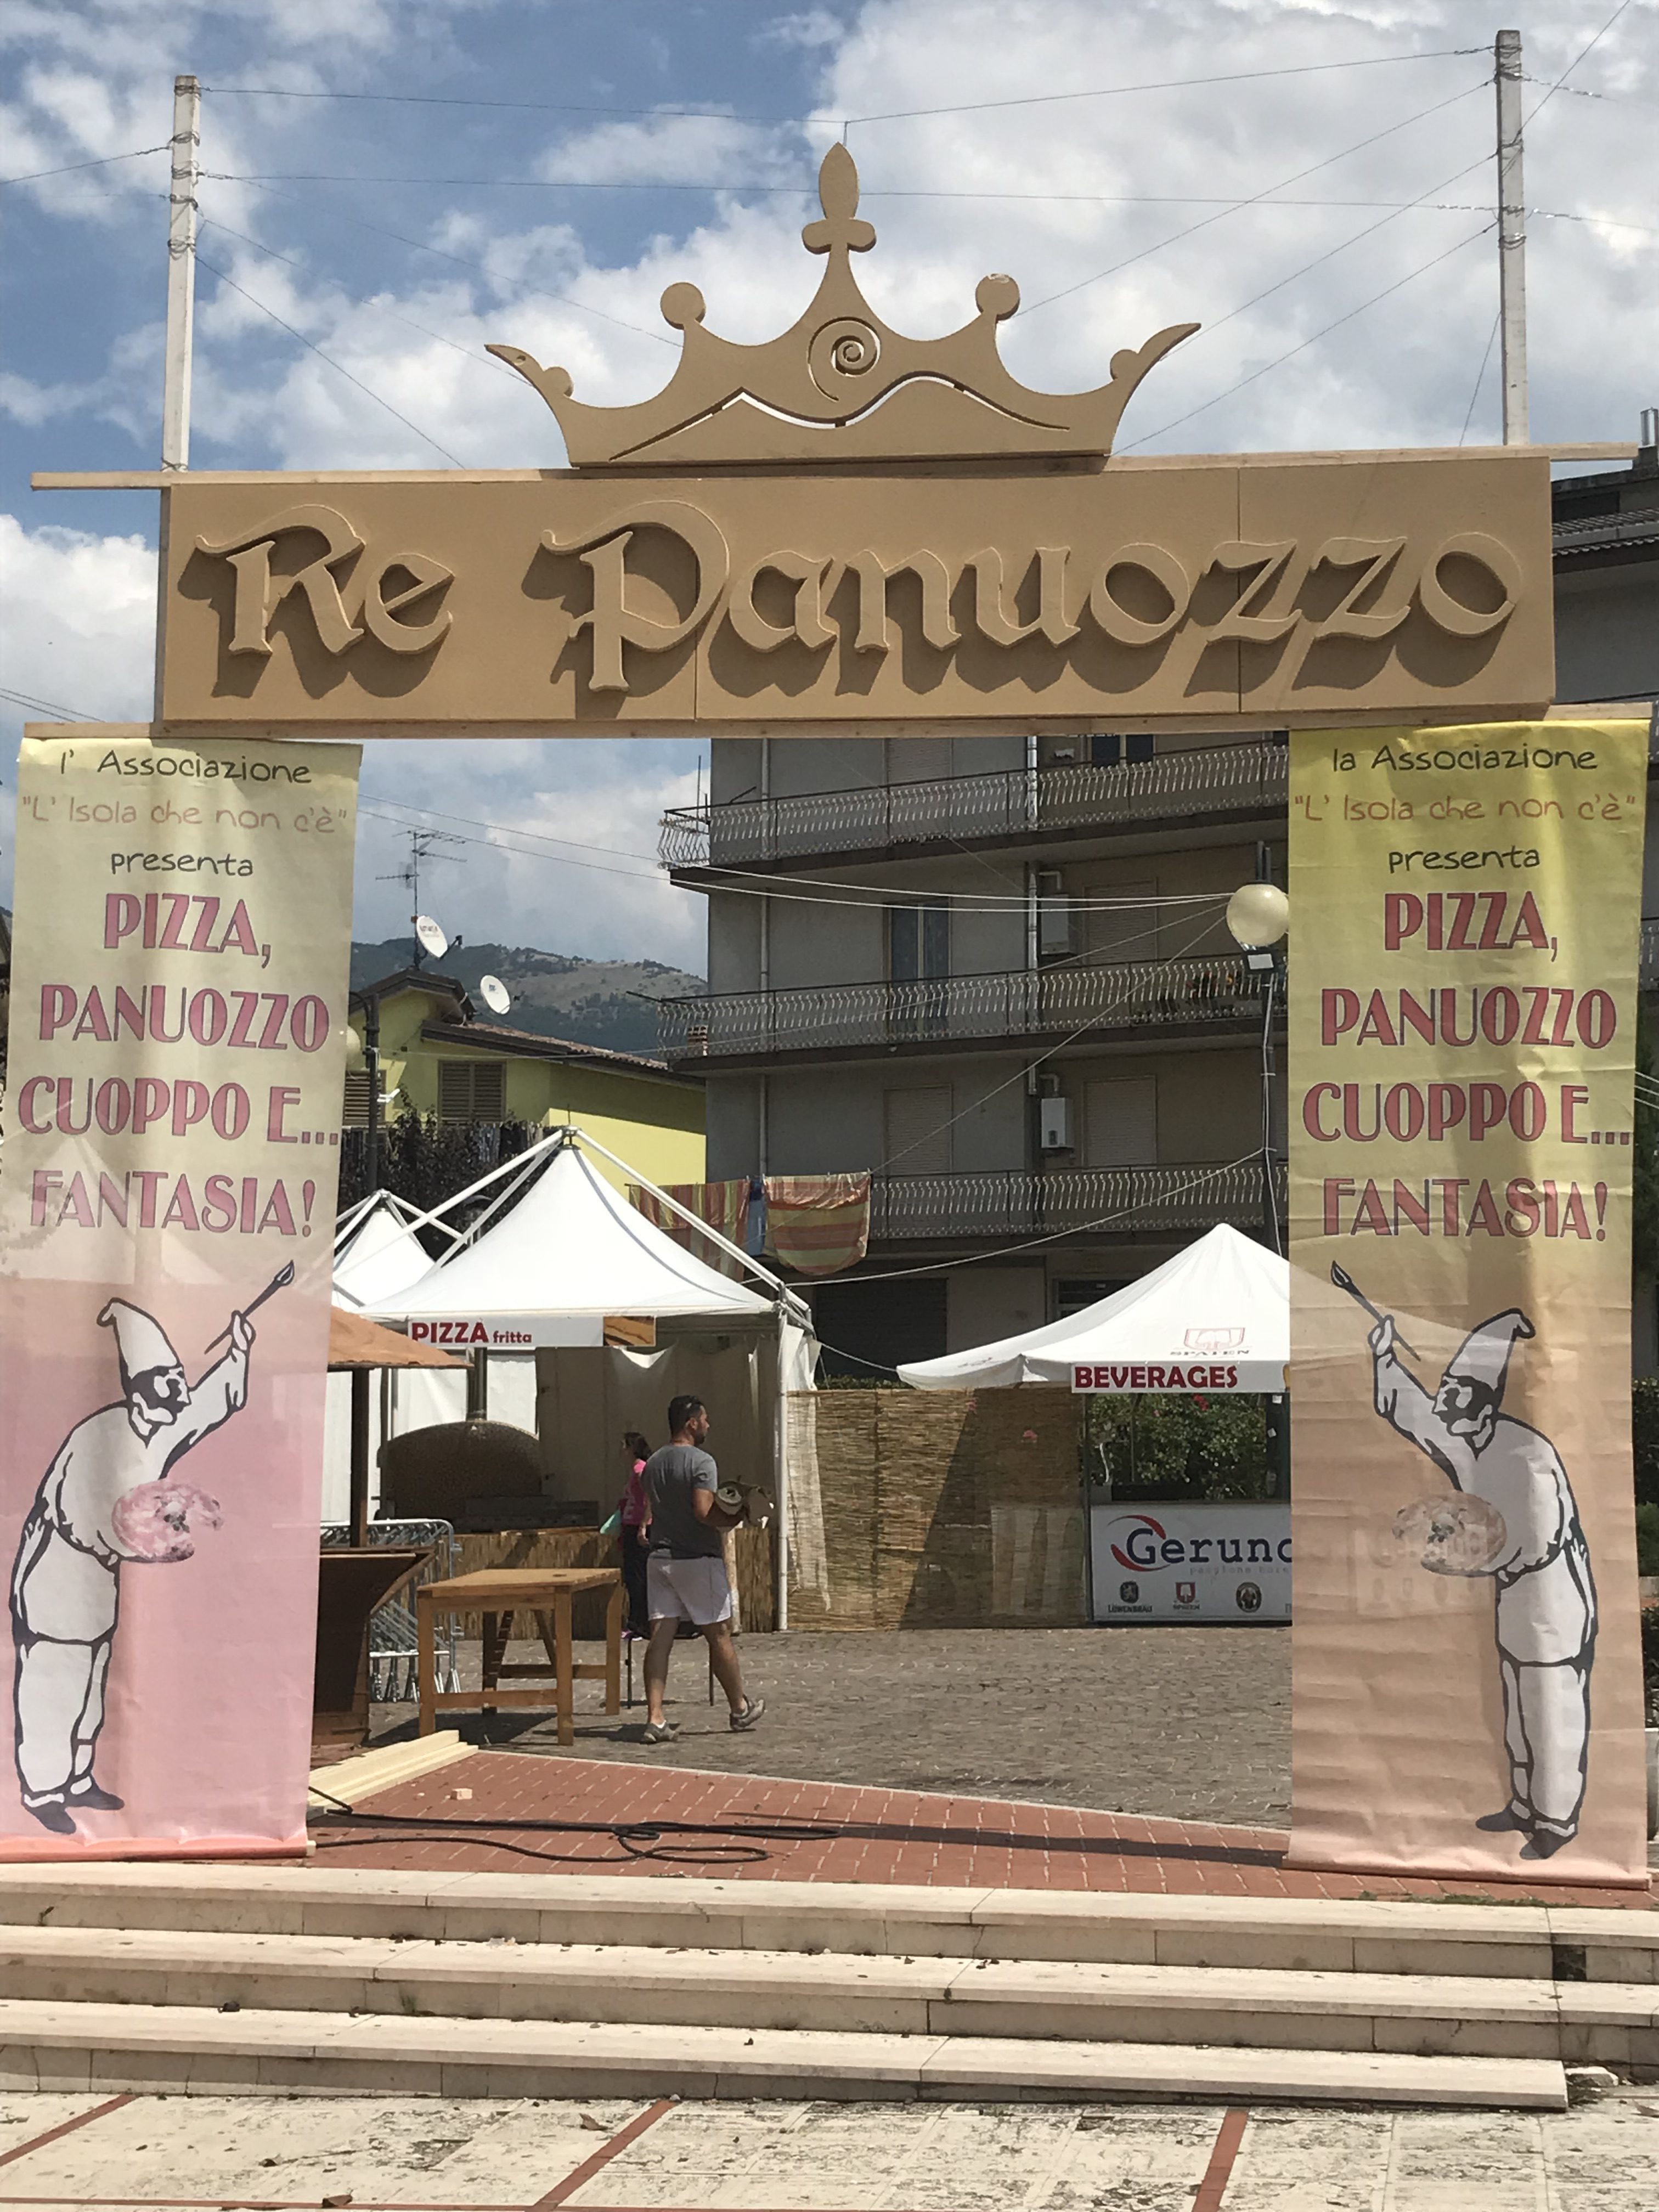 Re Panuozzo 2018 - Door